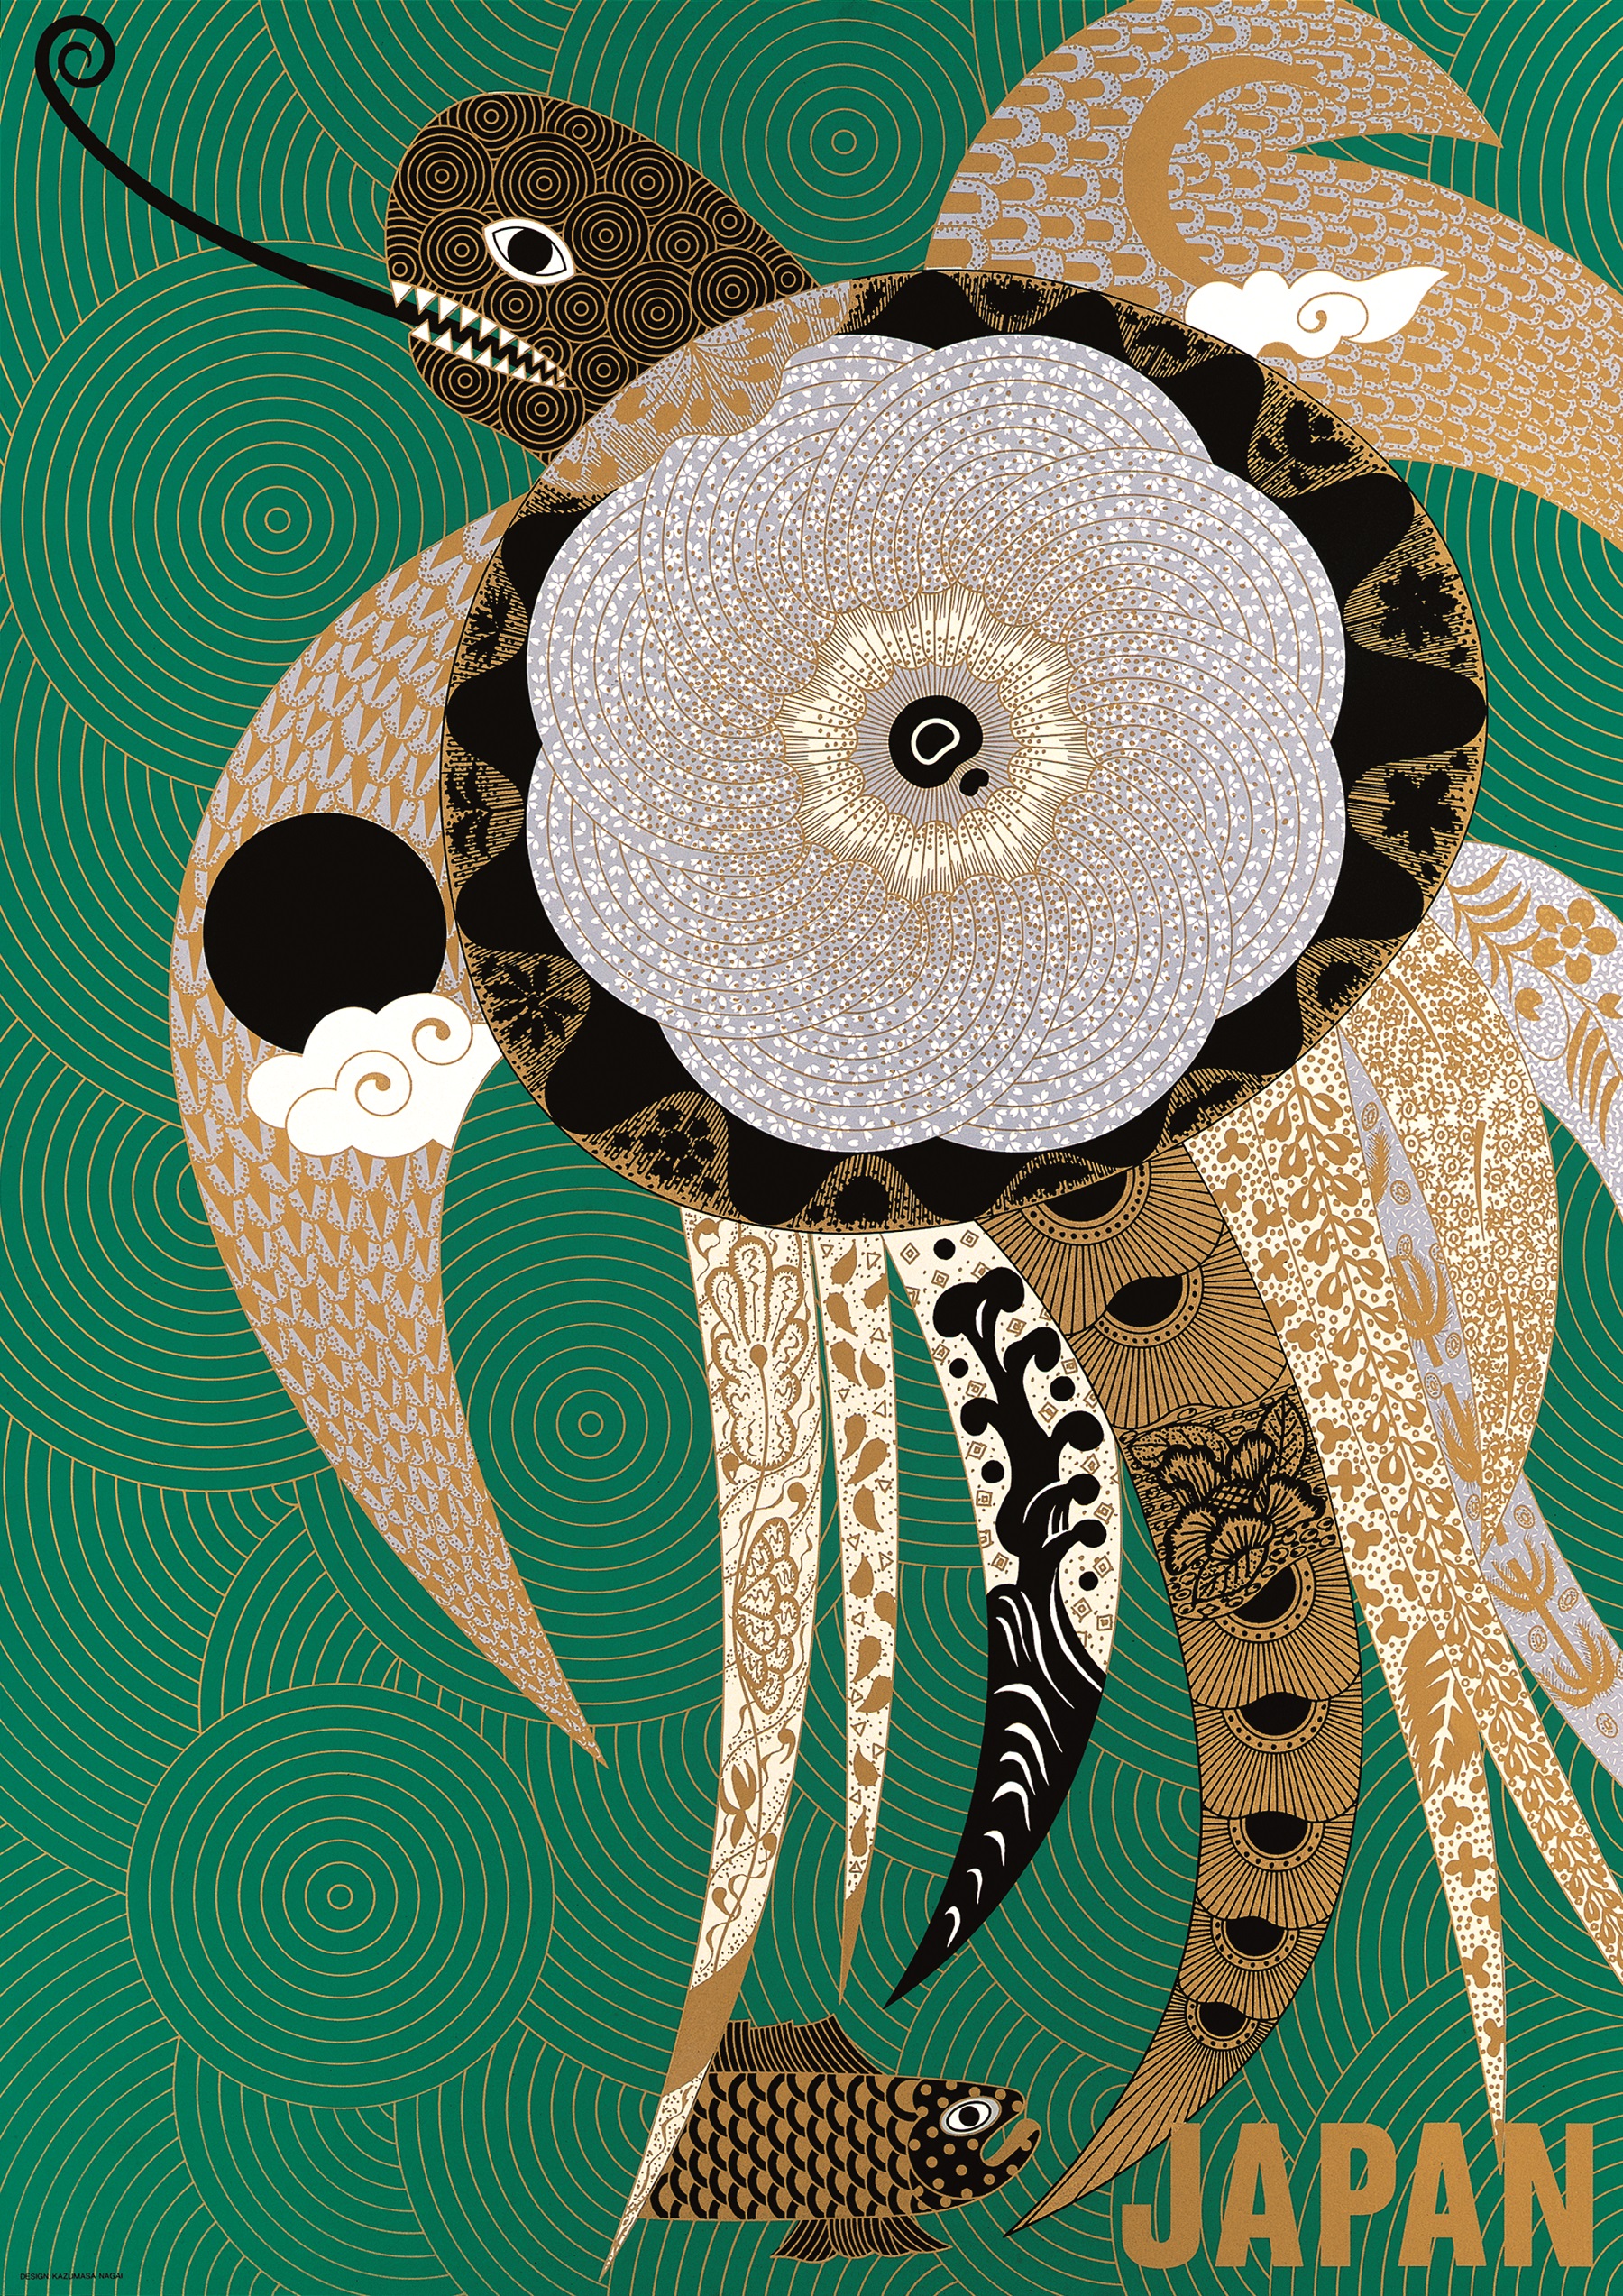 Nagai Kazumasa, JAPAN [Tartaruga marina], 1987, carta, serigrafia, 103 x 72,8 cm. Università degli Studi di Milano, Biblioteca di Storia dell’arte, della musica e dello spettacolo